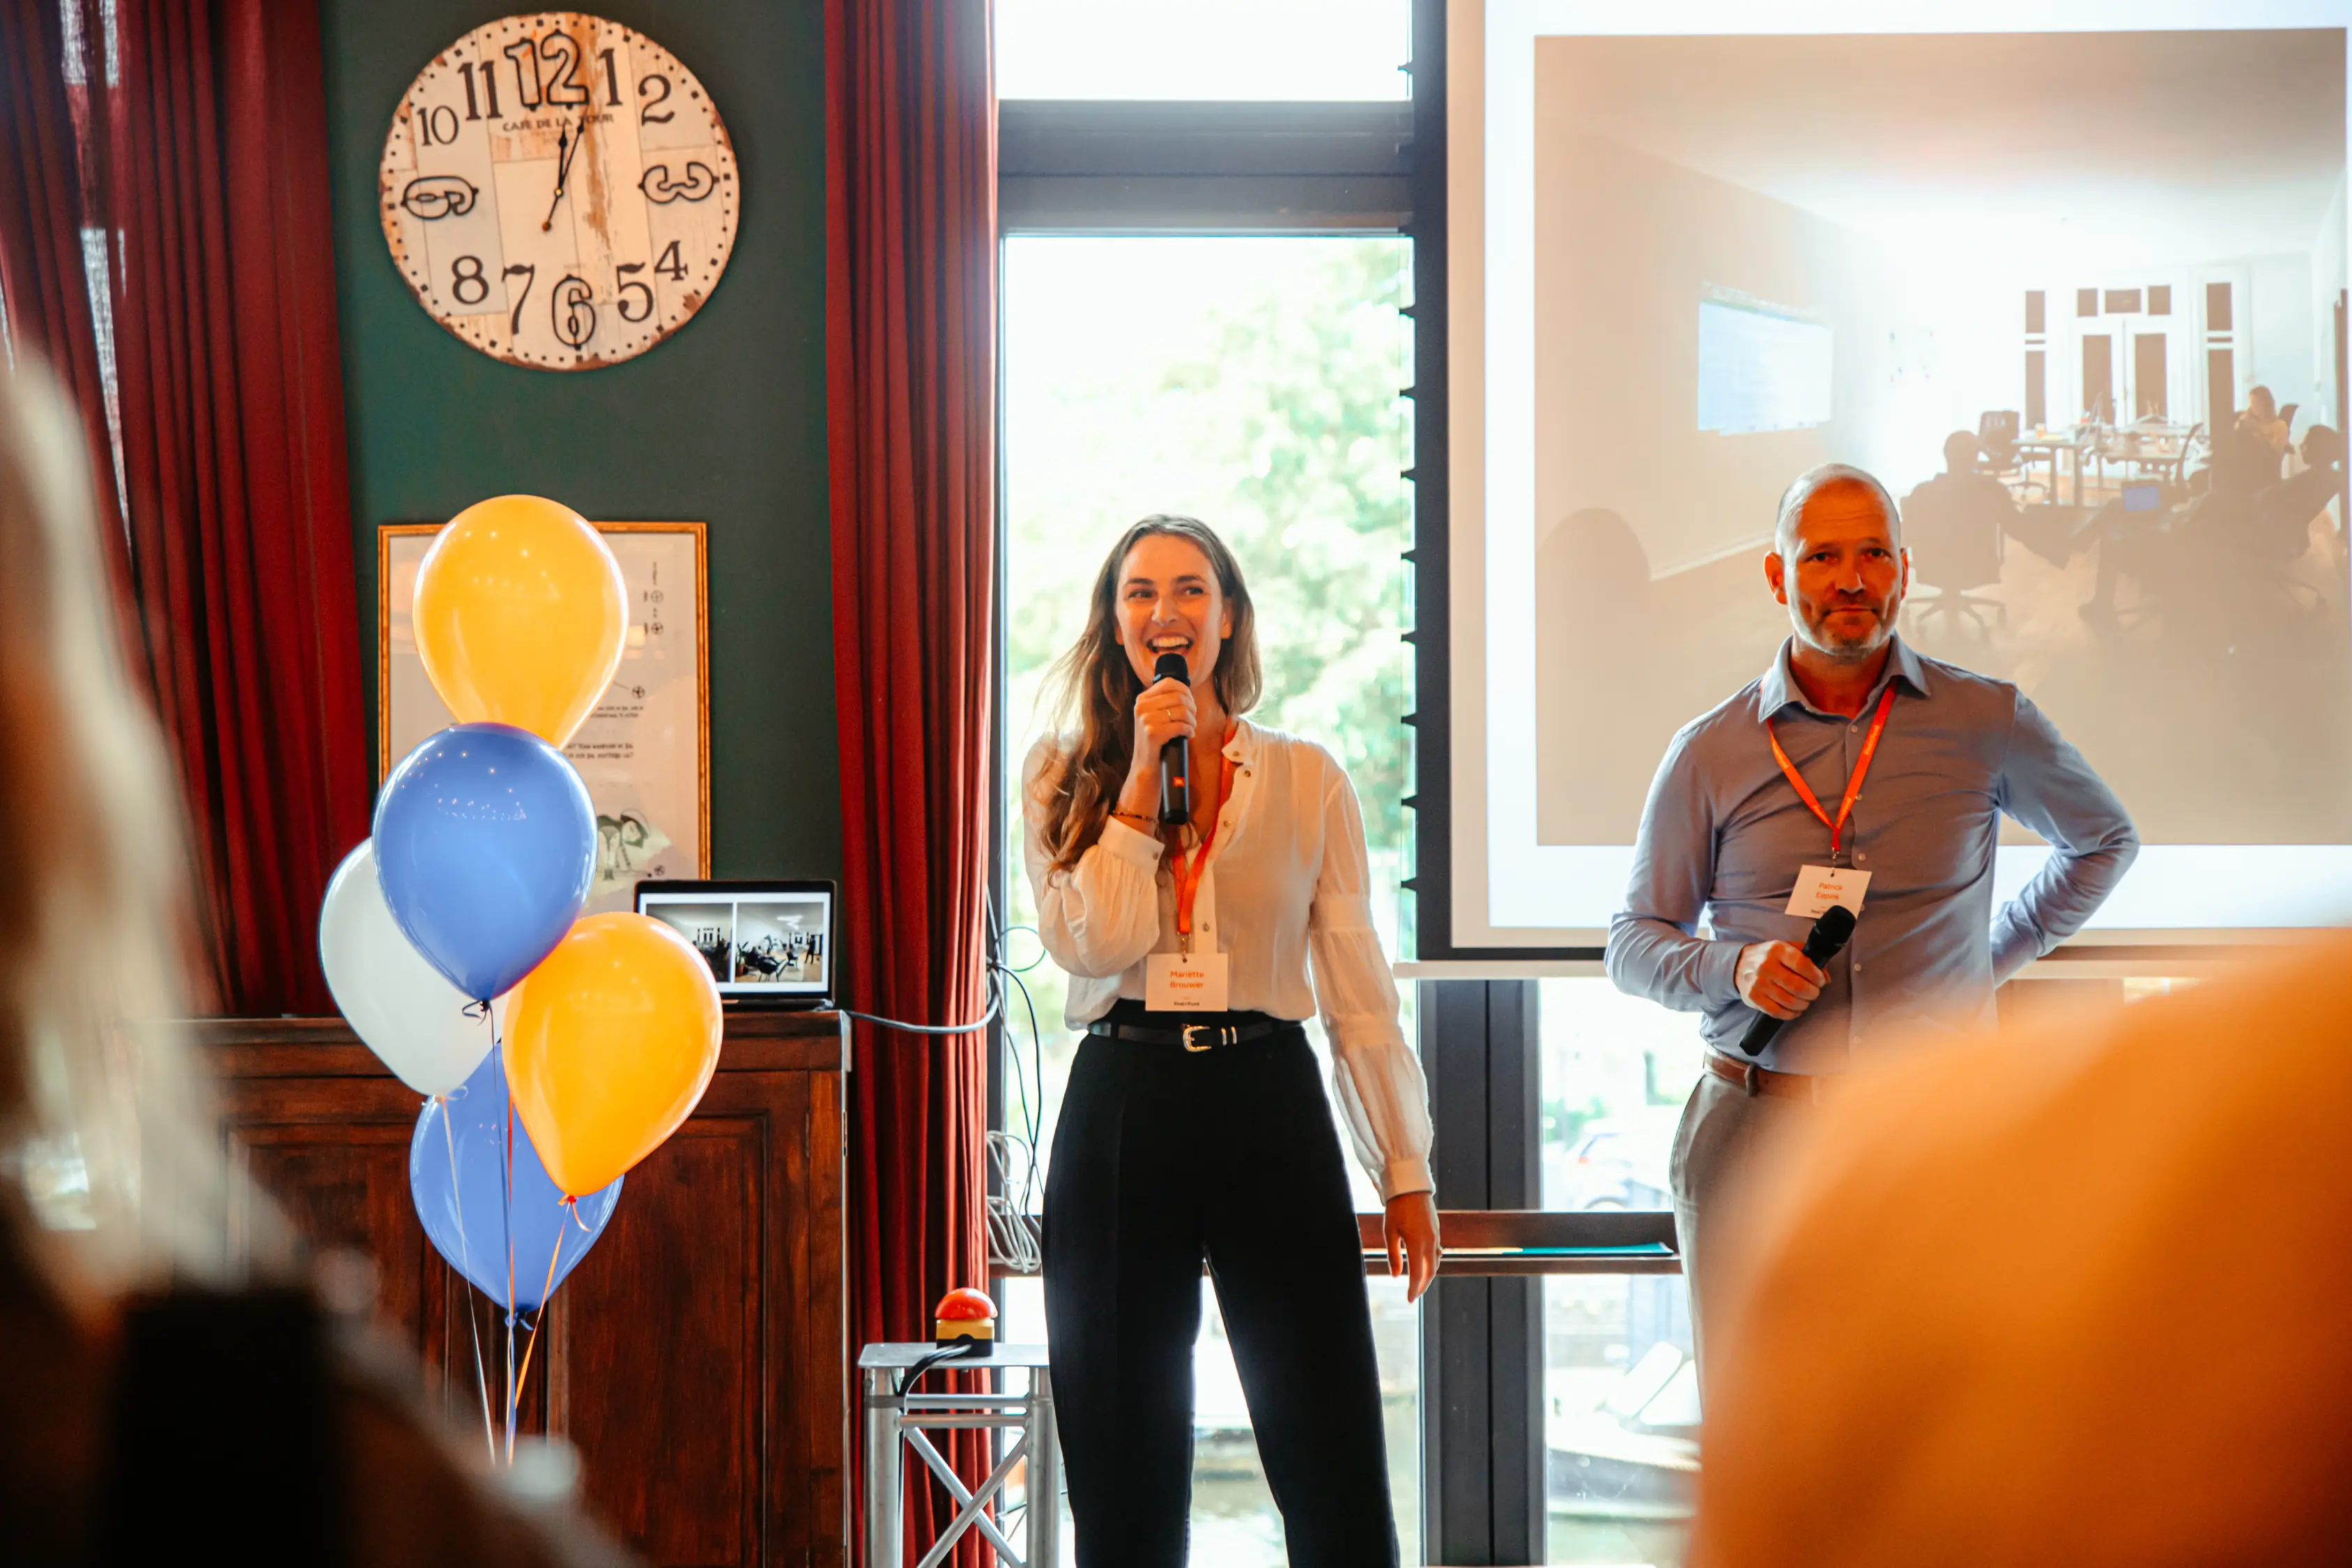 FindNFund oprichters Mariette Brouwer en Patrick Eppink aan het presenteren op het lancerings-evenement van het platform